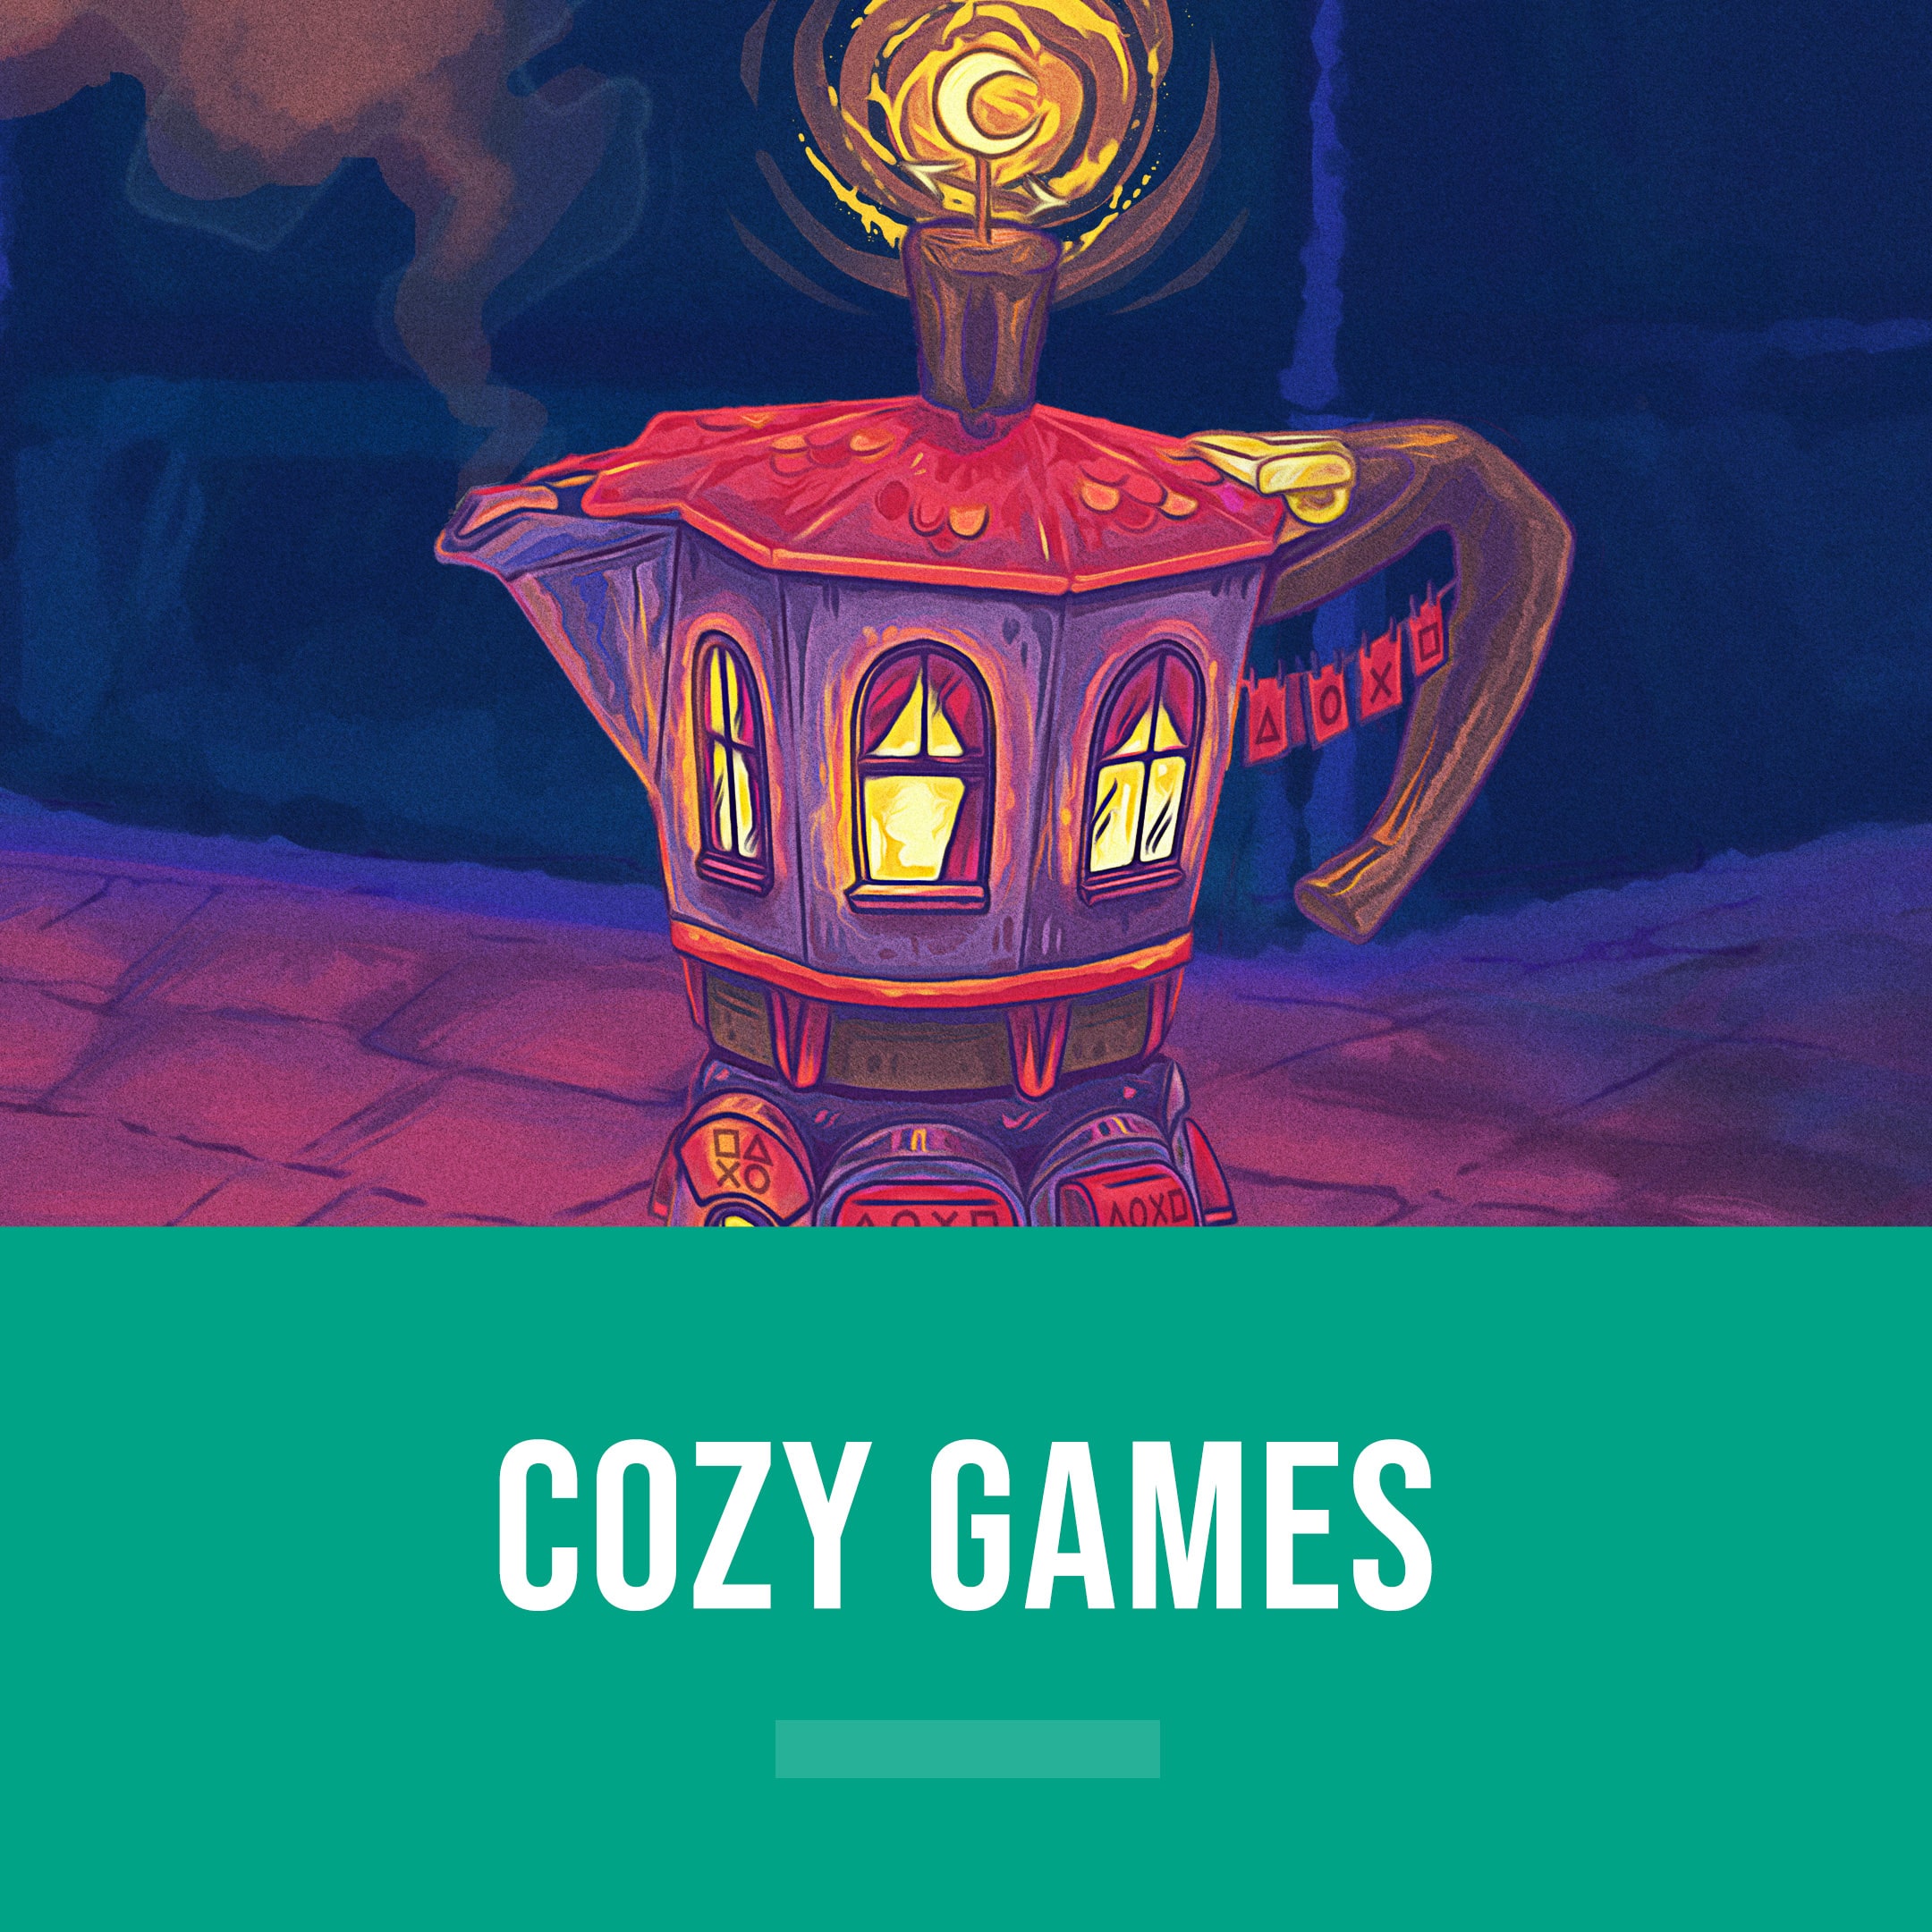 [EDITORIAL] Cozy Games Nov 22 S26